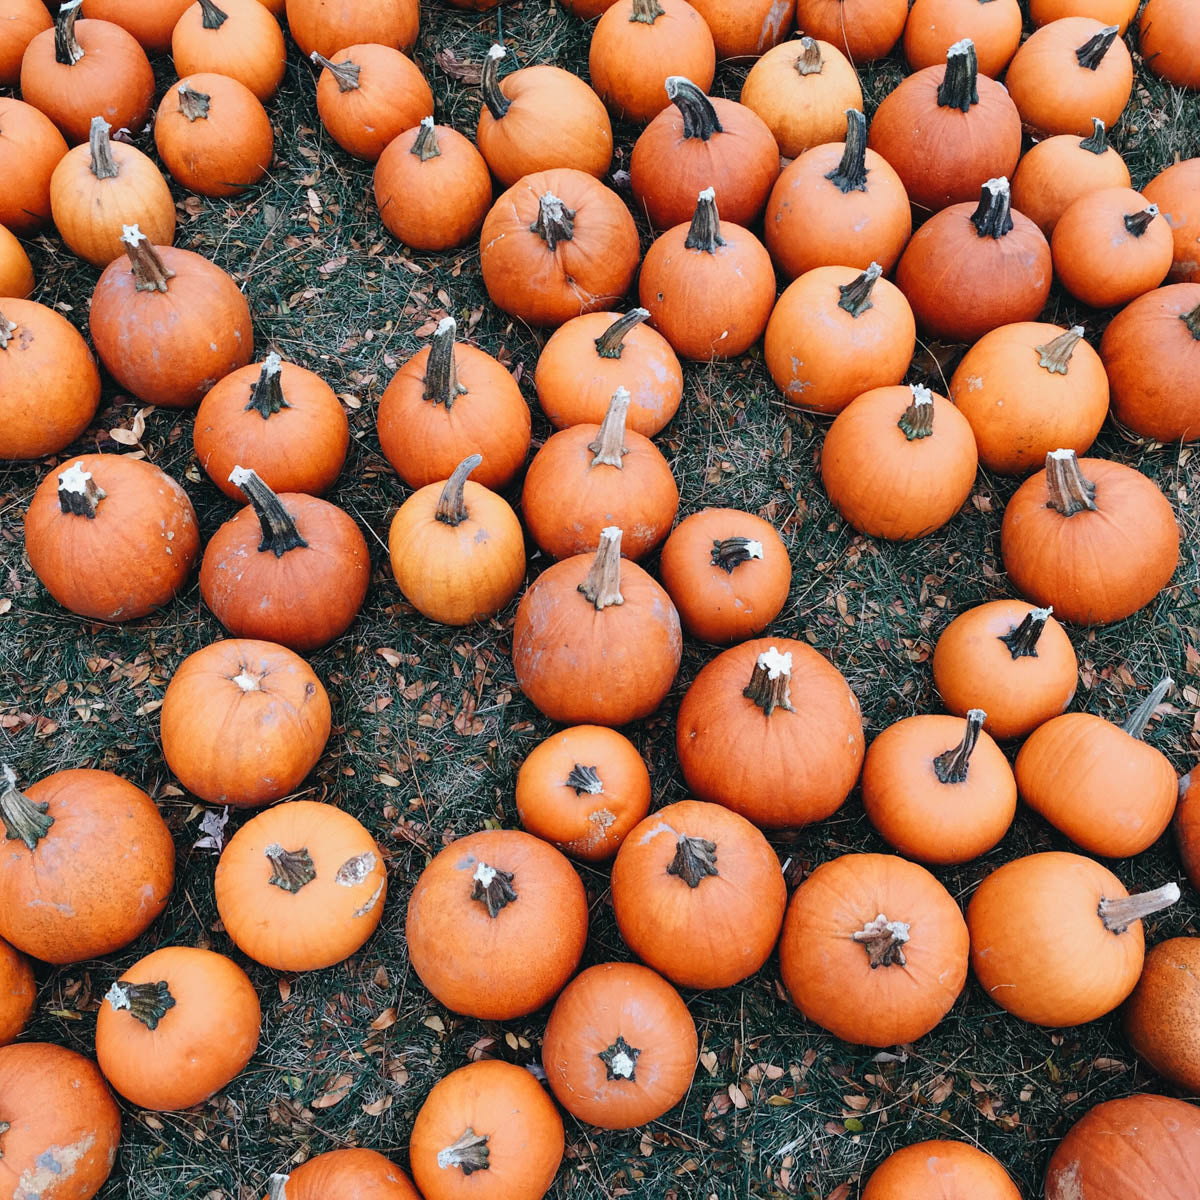 Pumpkins at the pumpkin patch